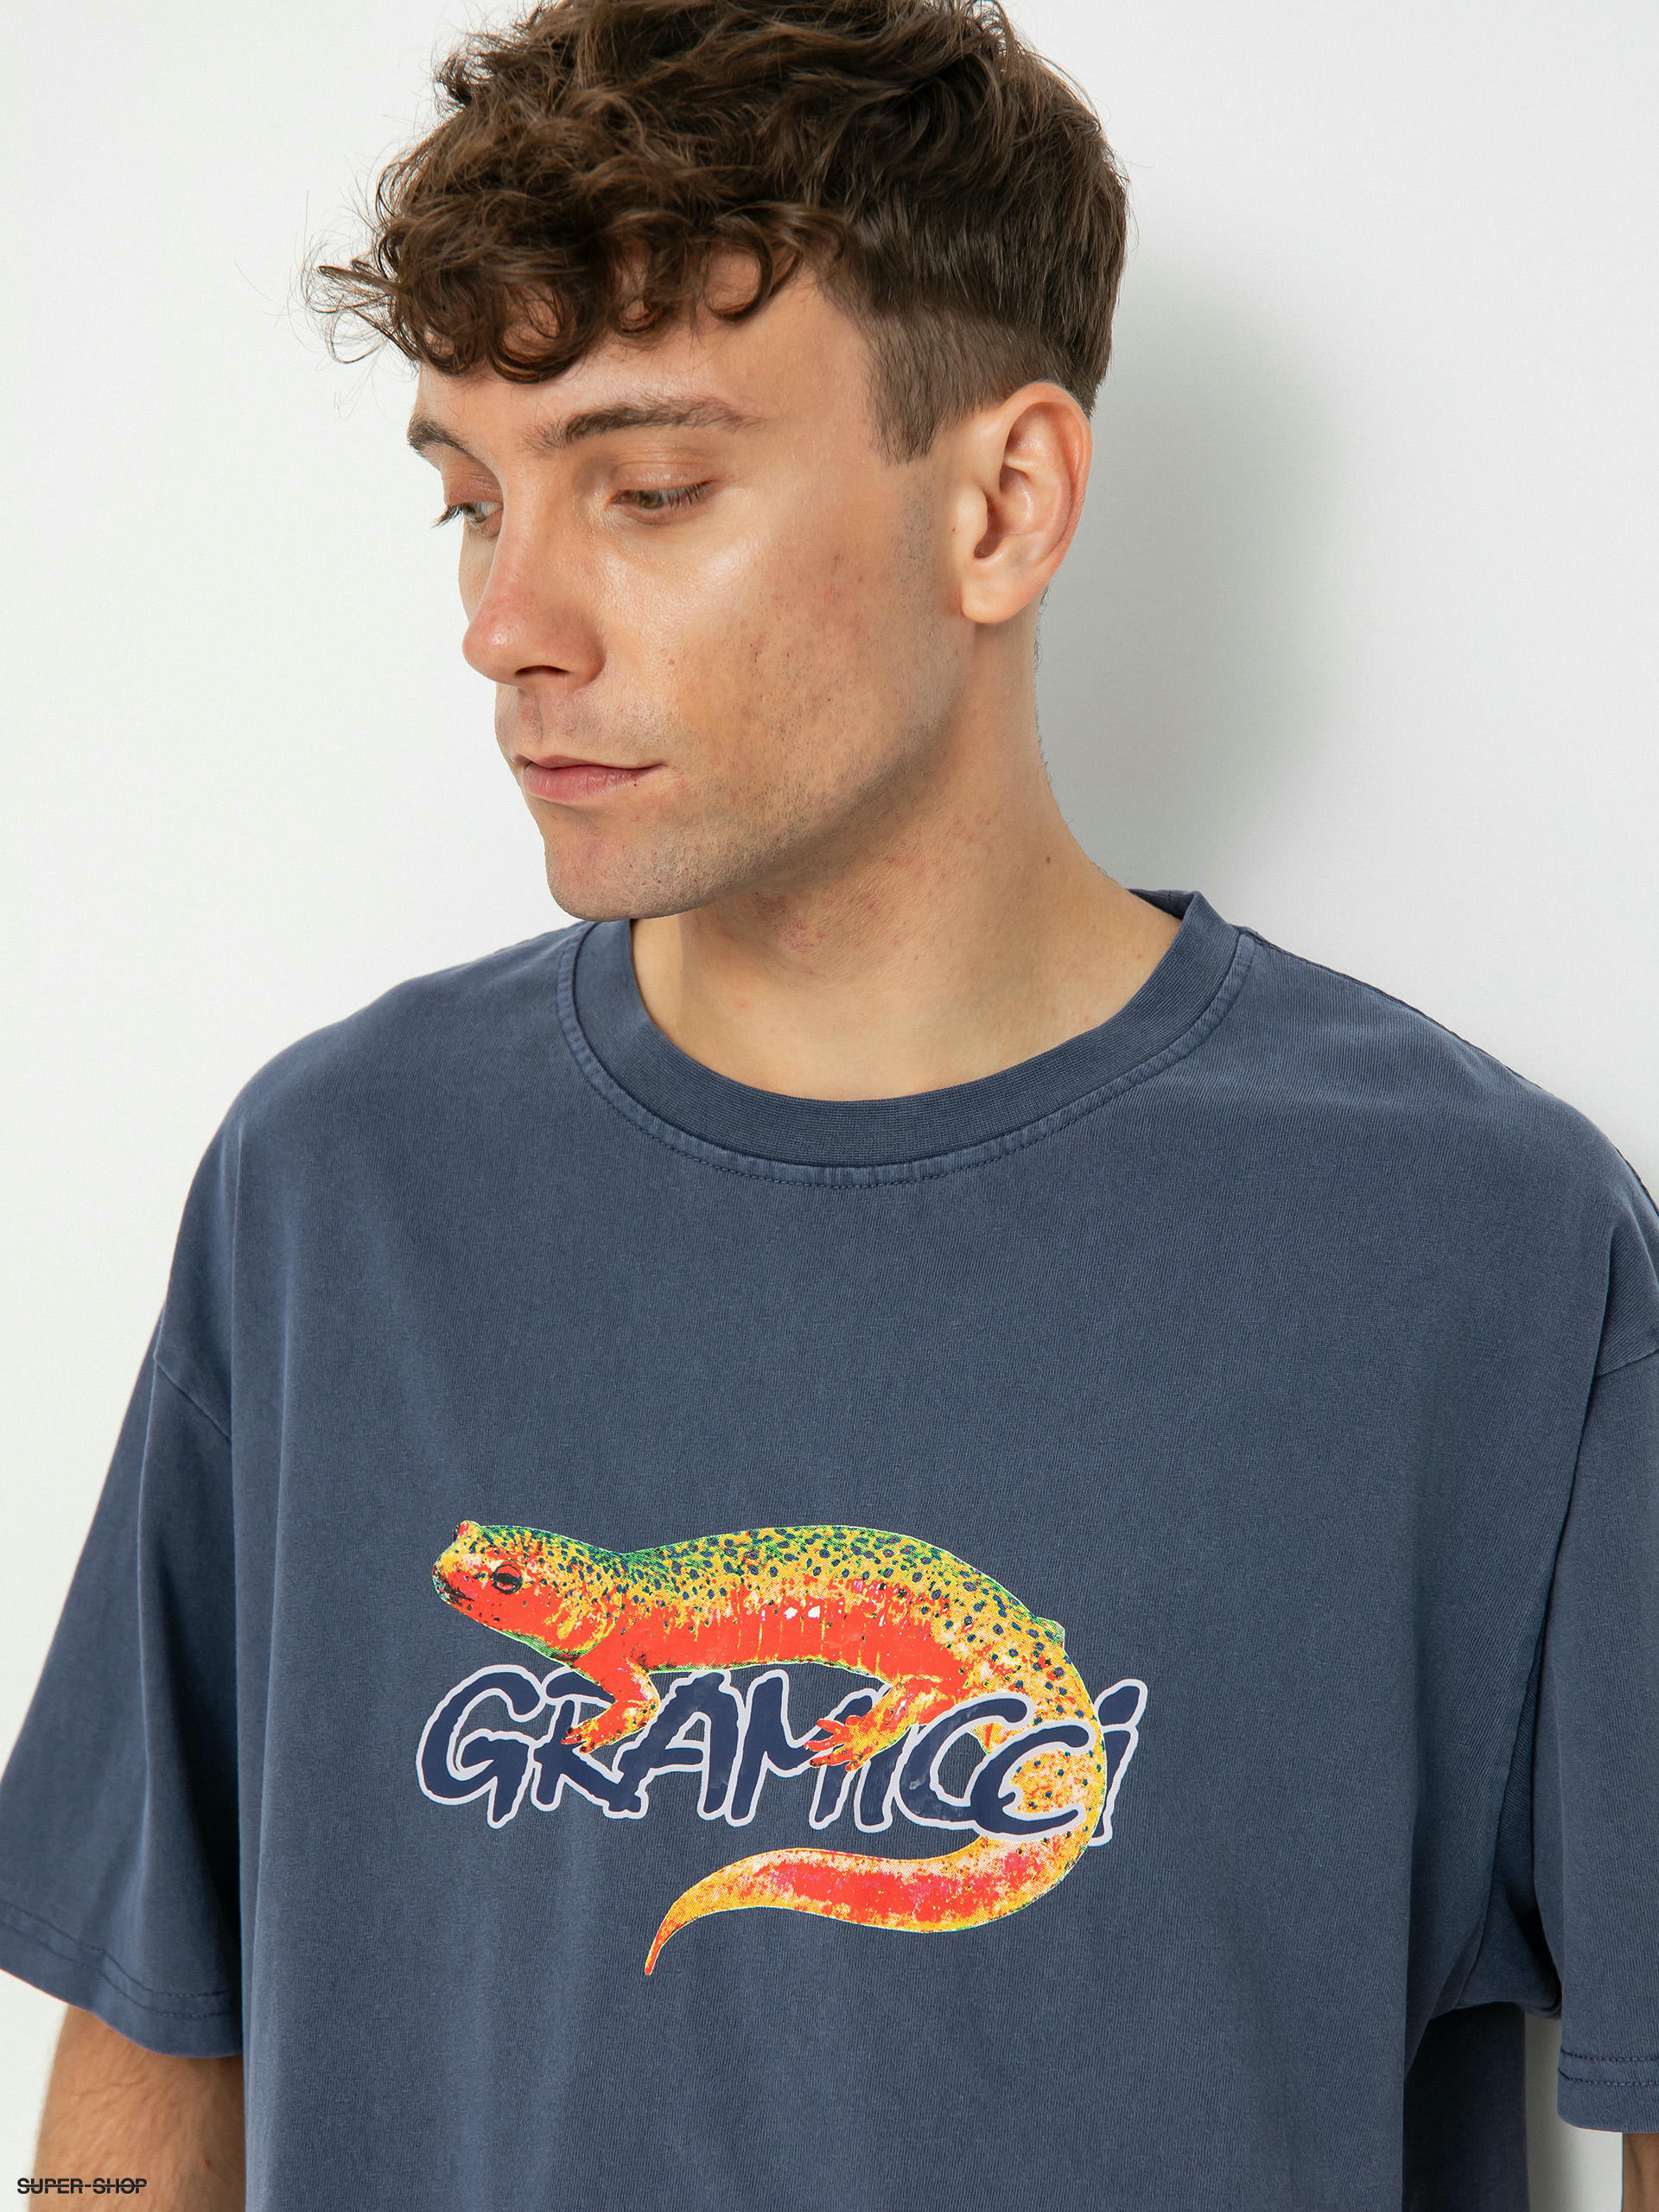 Salamander Shirts Ltd Sizing and Colour